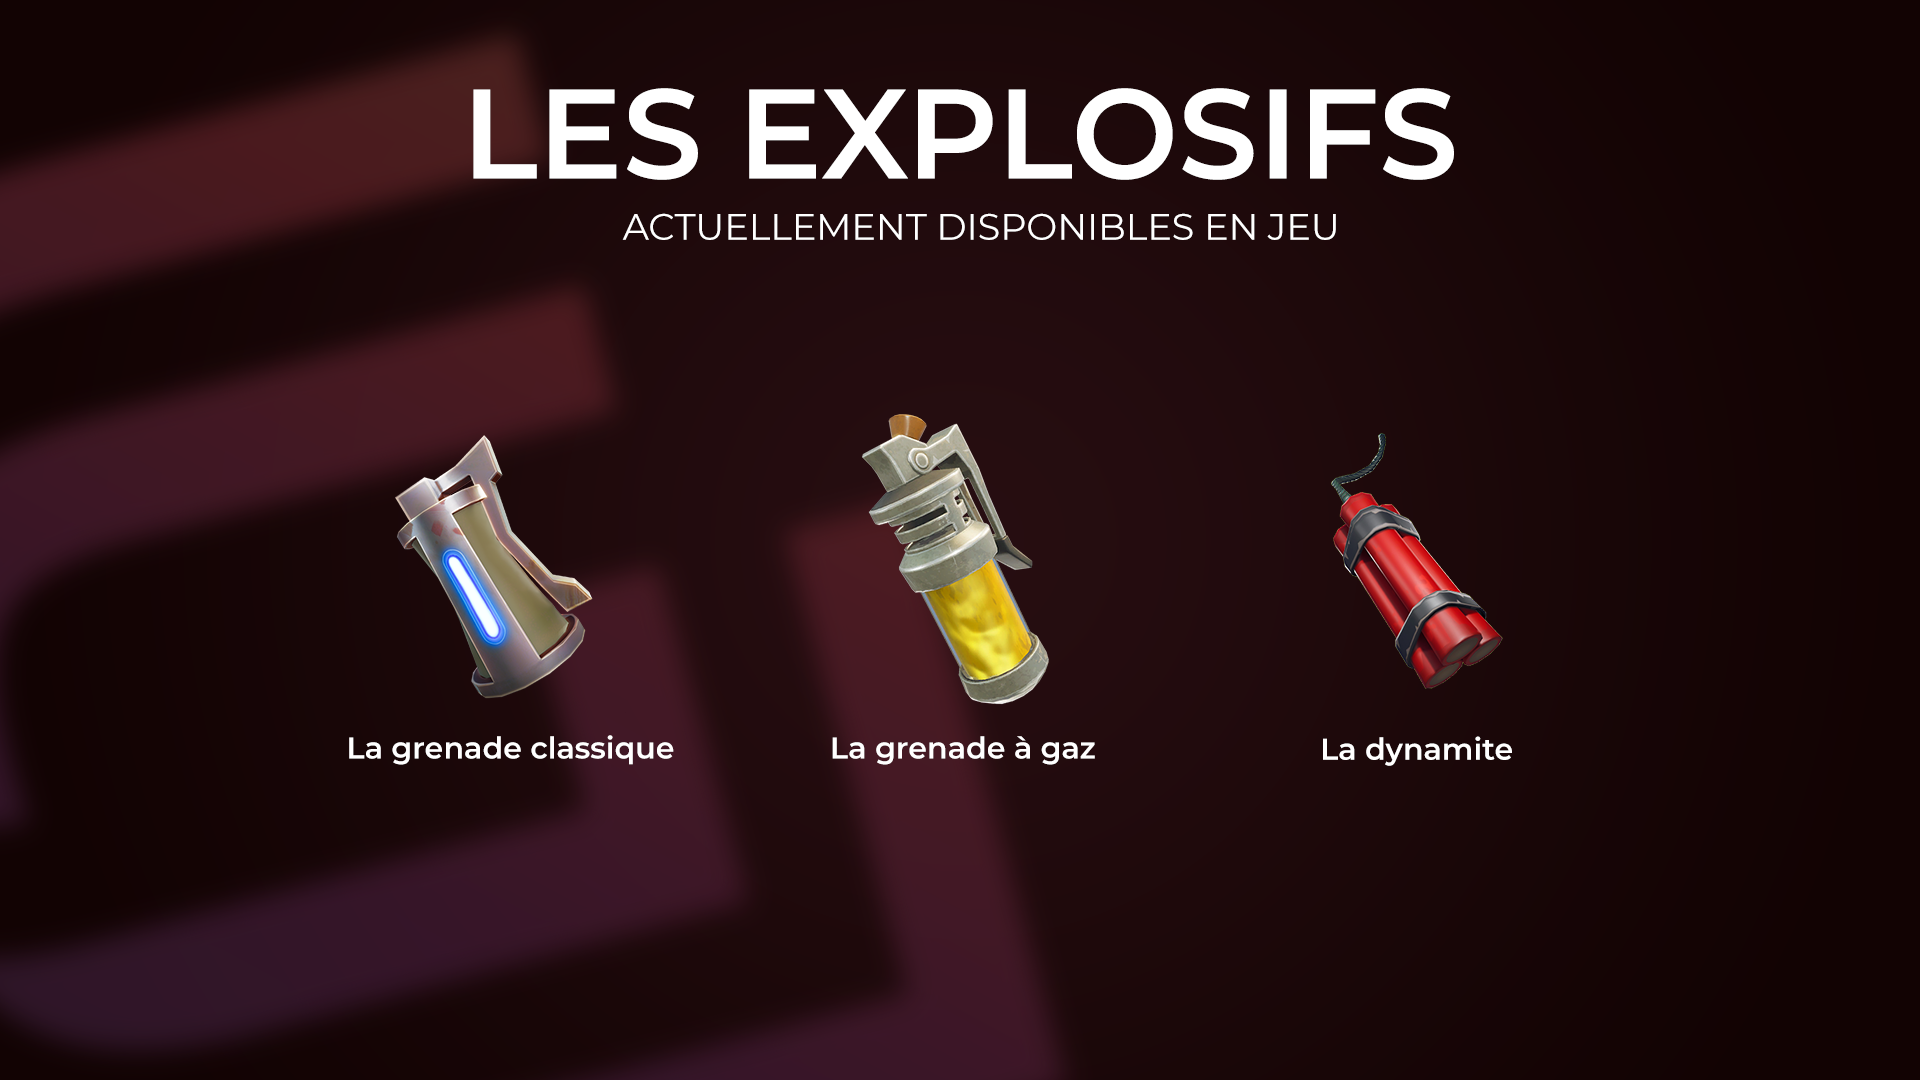 Les explosifs disponibles en jeu